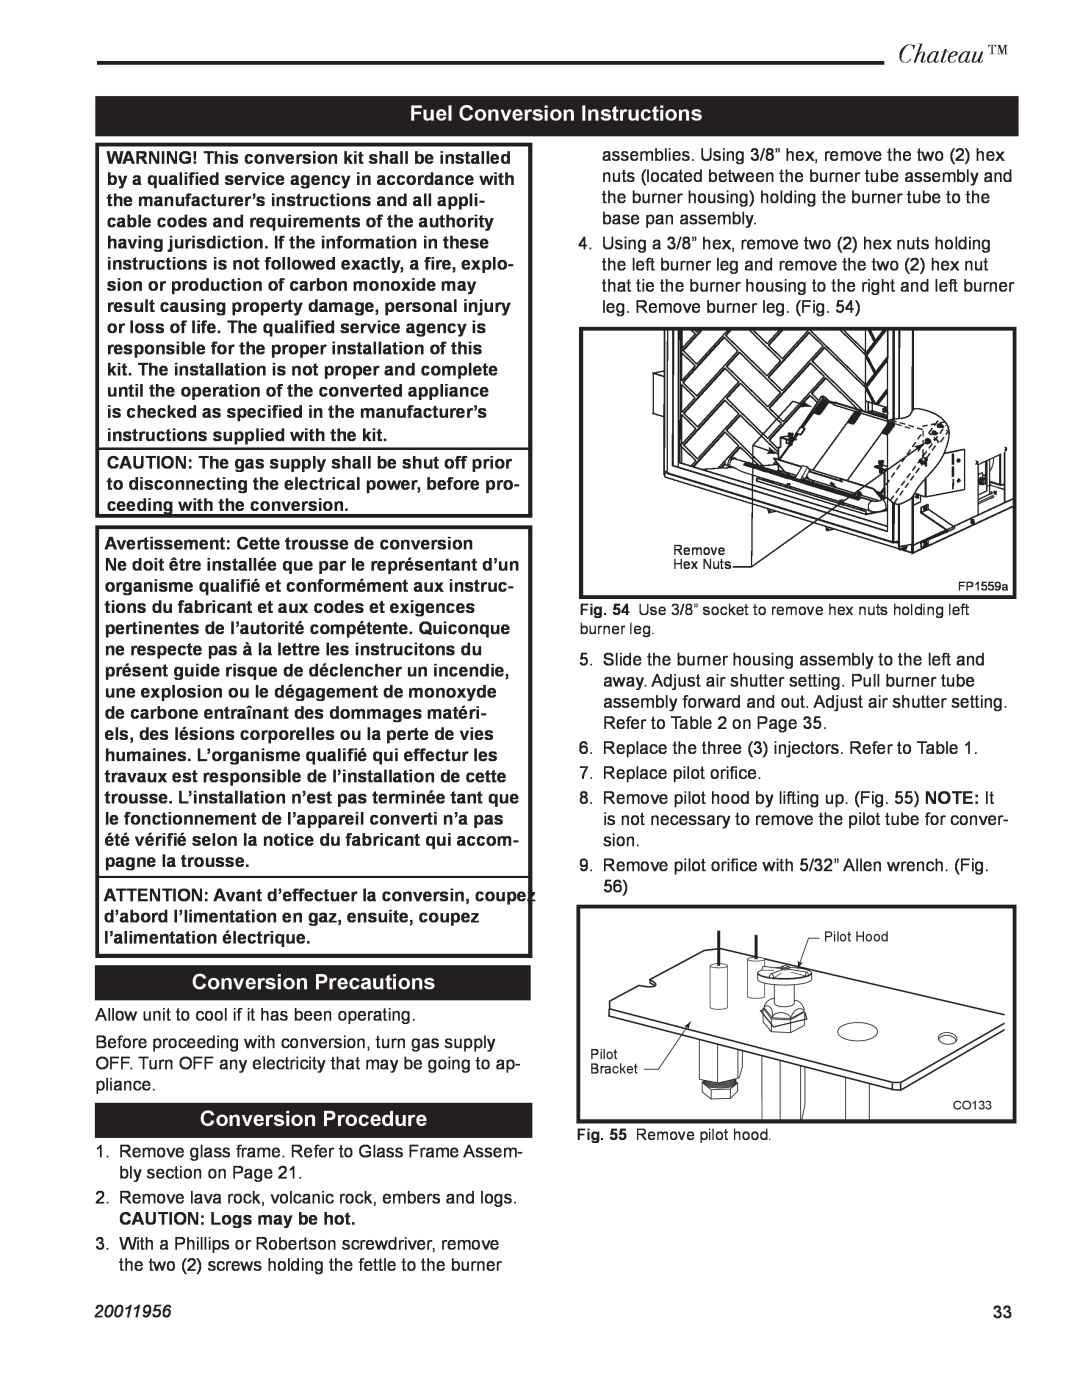 Vermont Casting DVT44 Fuel Conversion Instructions, Conversion Precautions, Conversion Procedure, Chateau, 20011956 